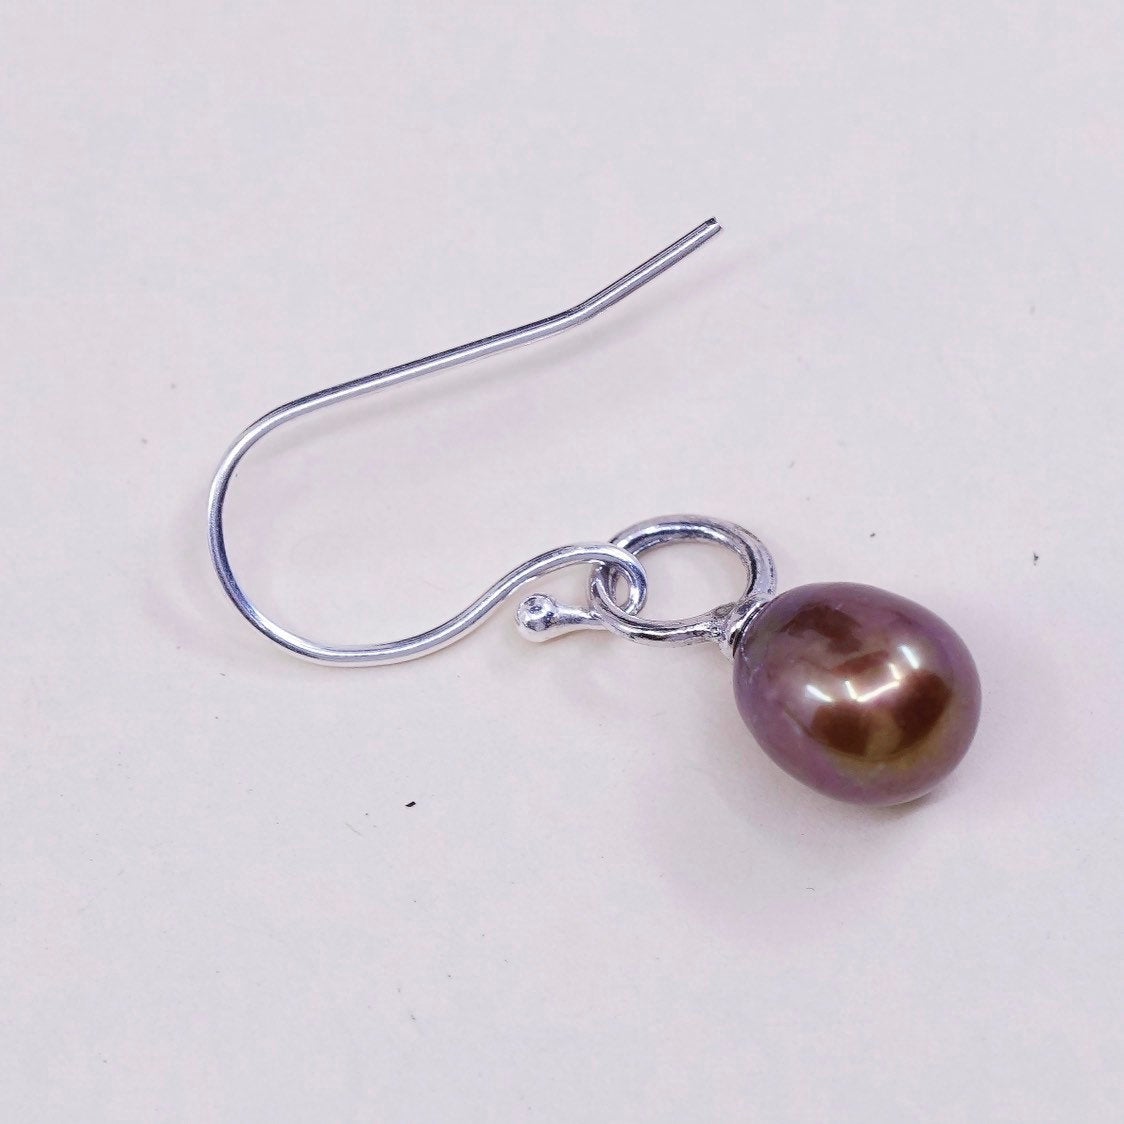 vtg Sterling silver handmade earrings, 925 hooks with golden pearl drops